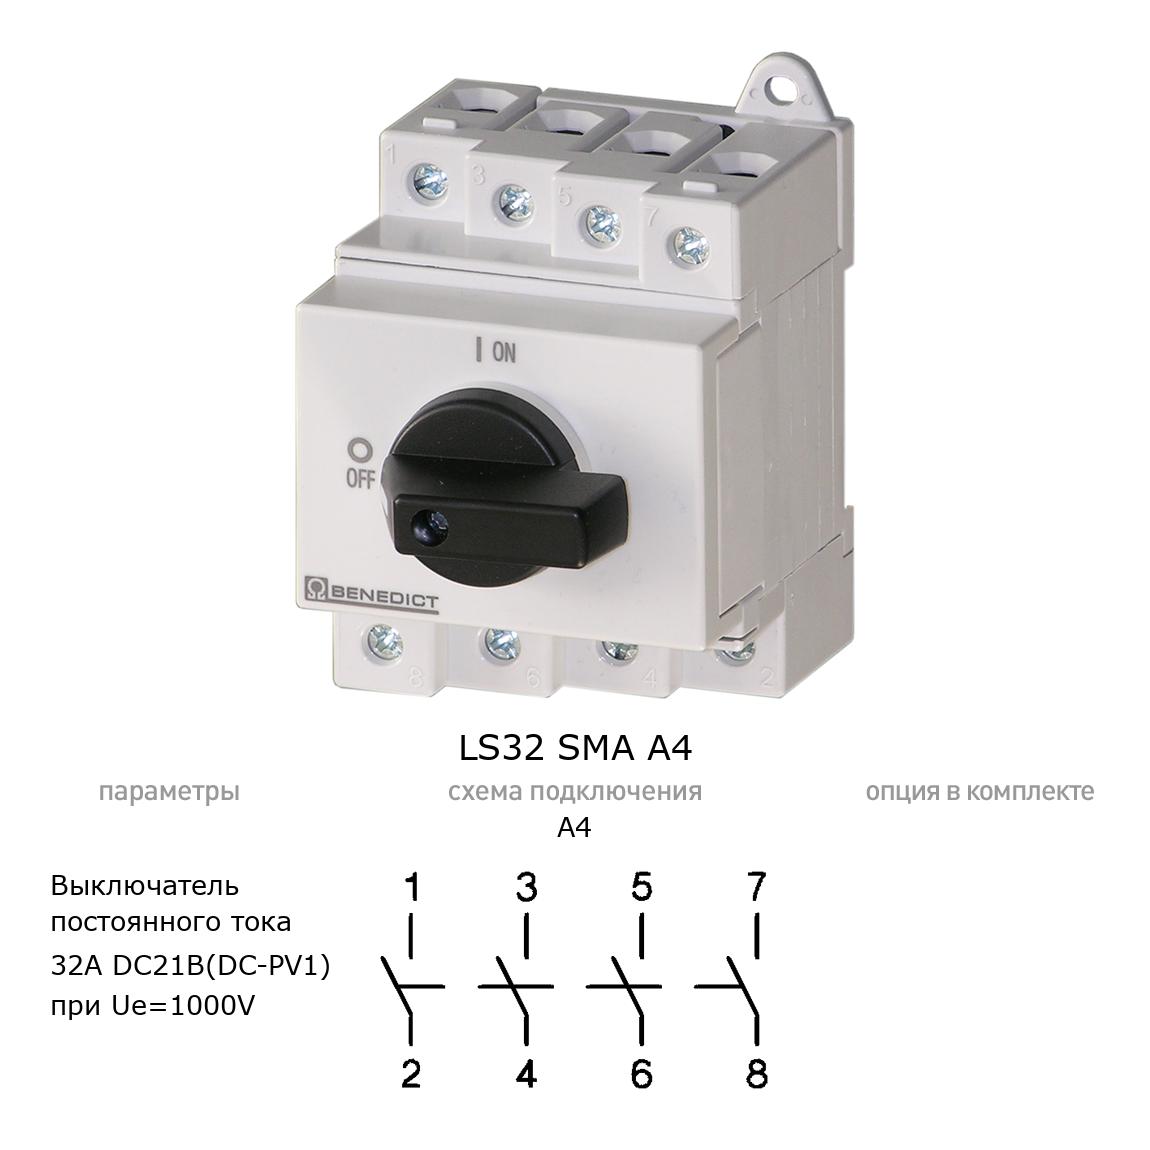 Кулачковый переключатель для постоянного тока (DC) LS32 SMA A4 BENEDICT